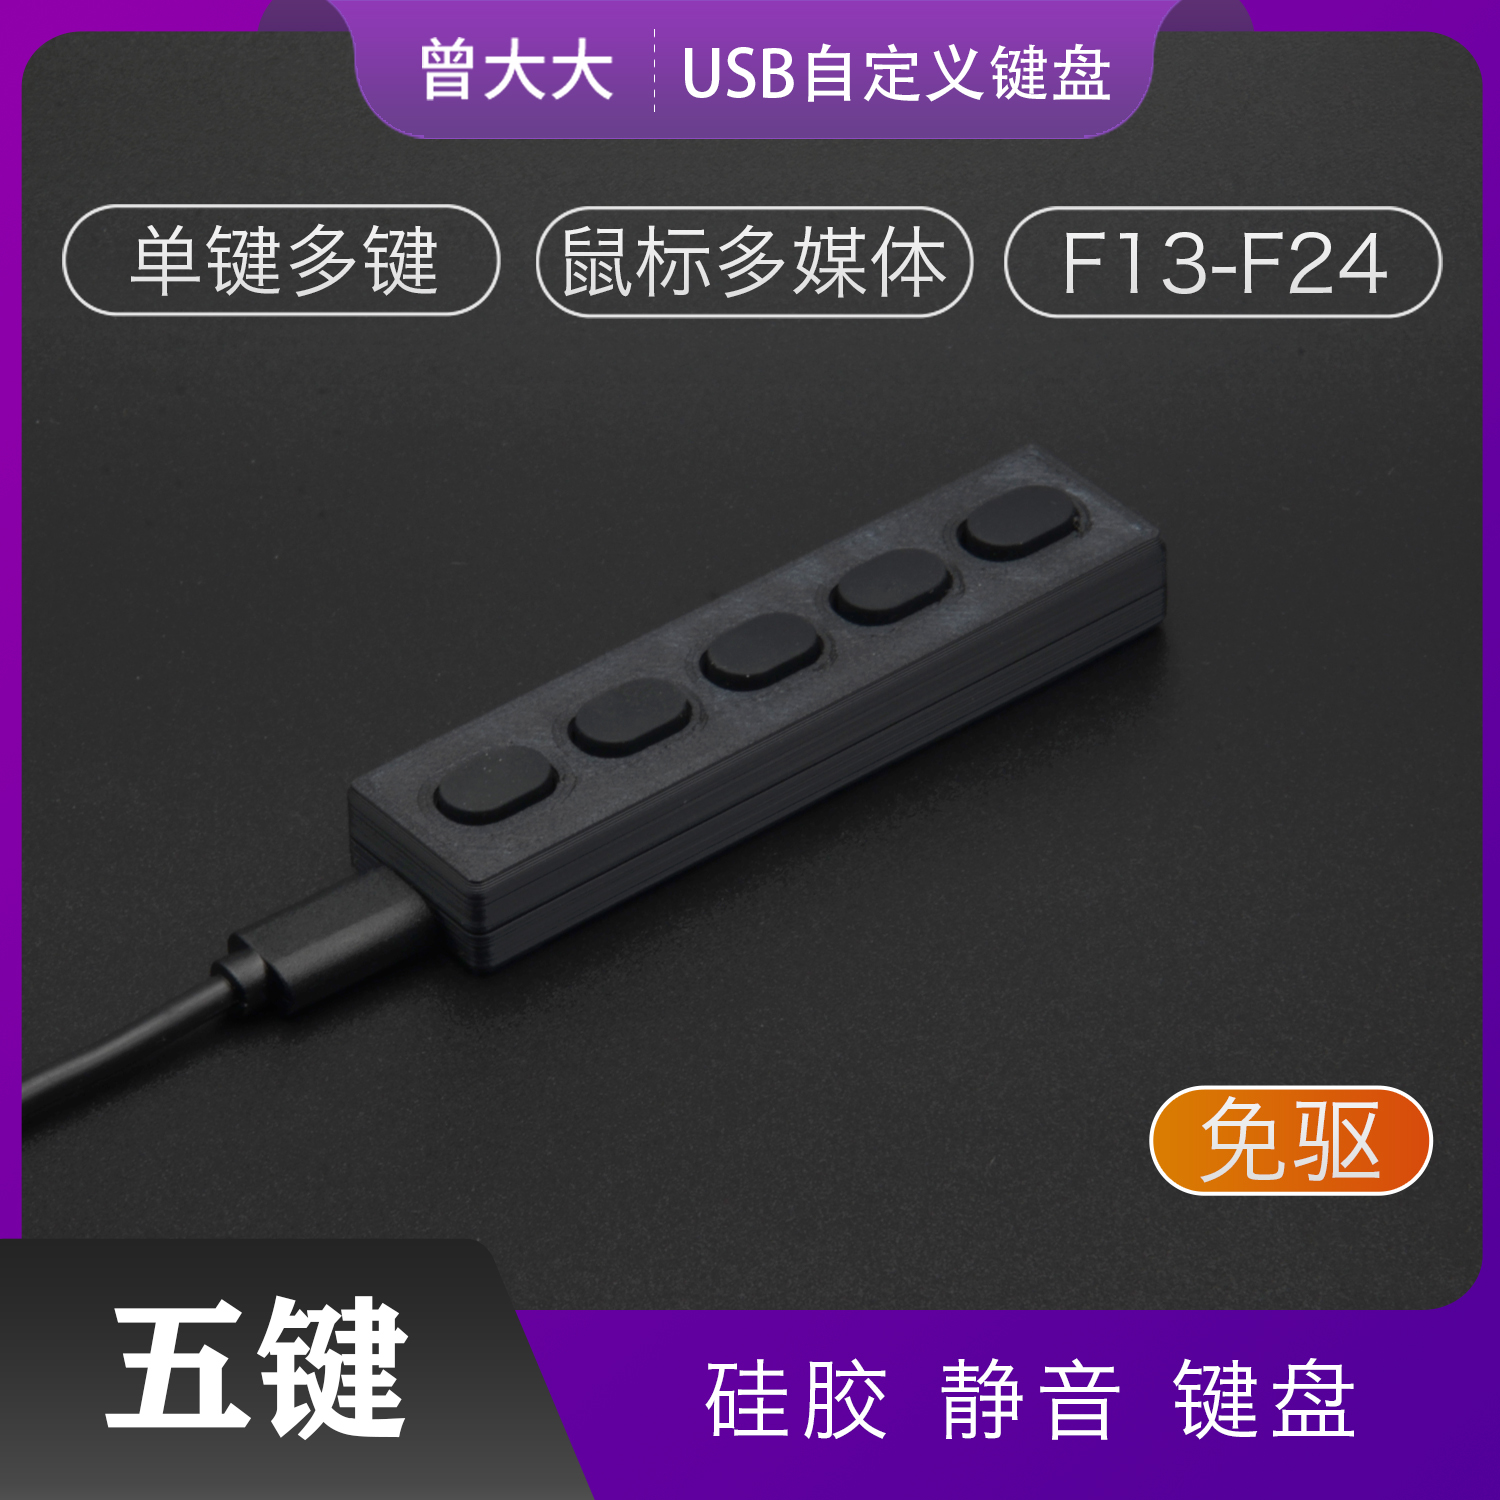 静音键盘 录音5键 无声硅胶迷你黑色键盘 塑料USB自定义快捷键盘